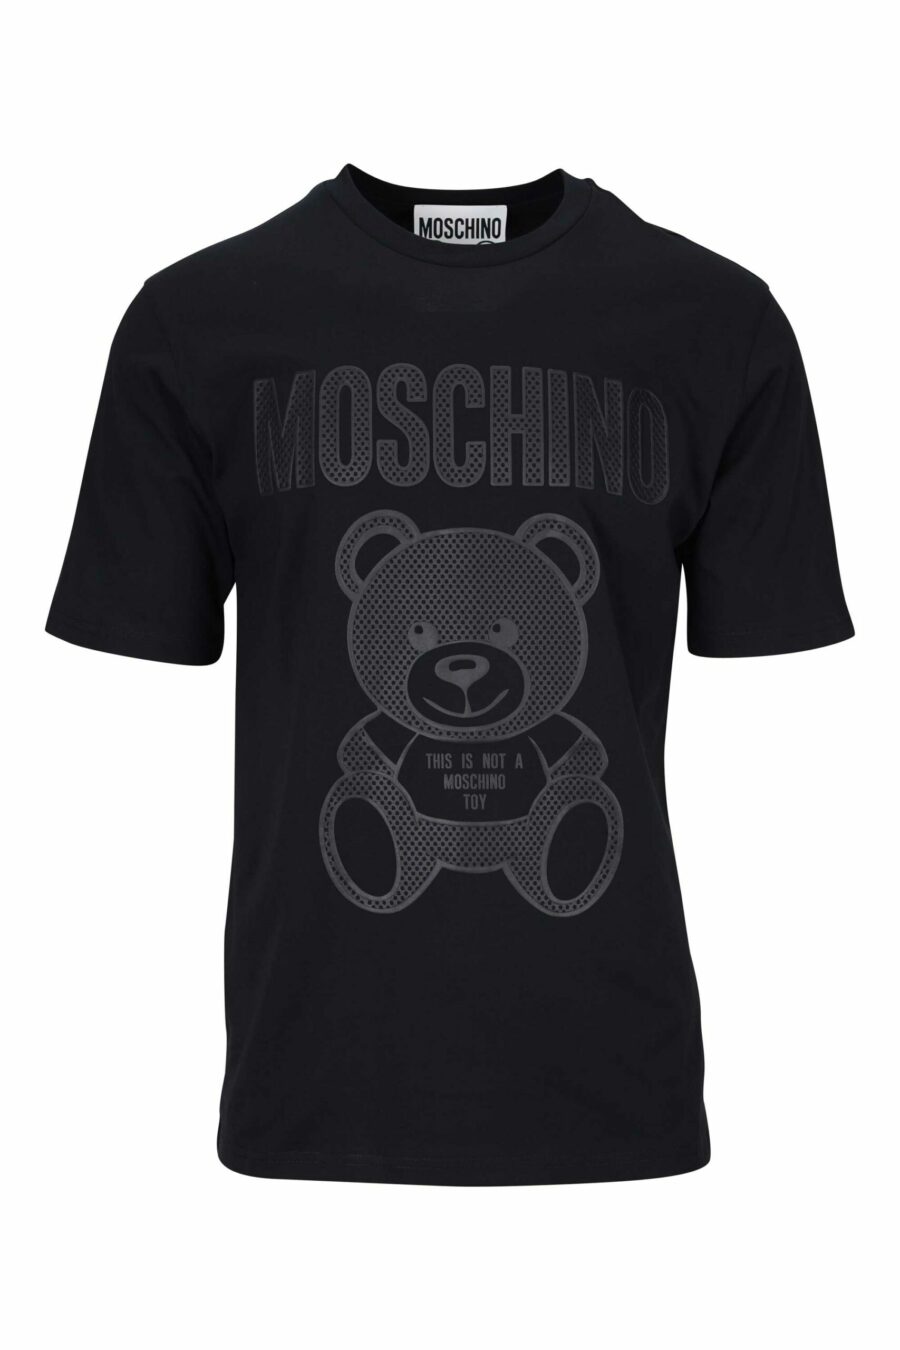 T-shirt preta com maxilogo de urso pontilhado monocromático - 667113455754 scaled